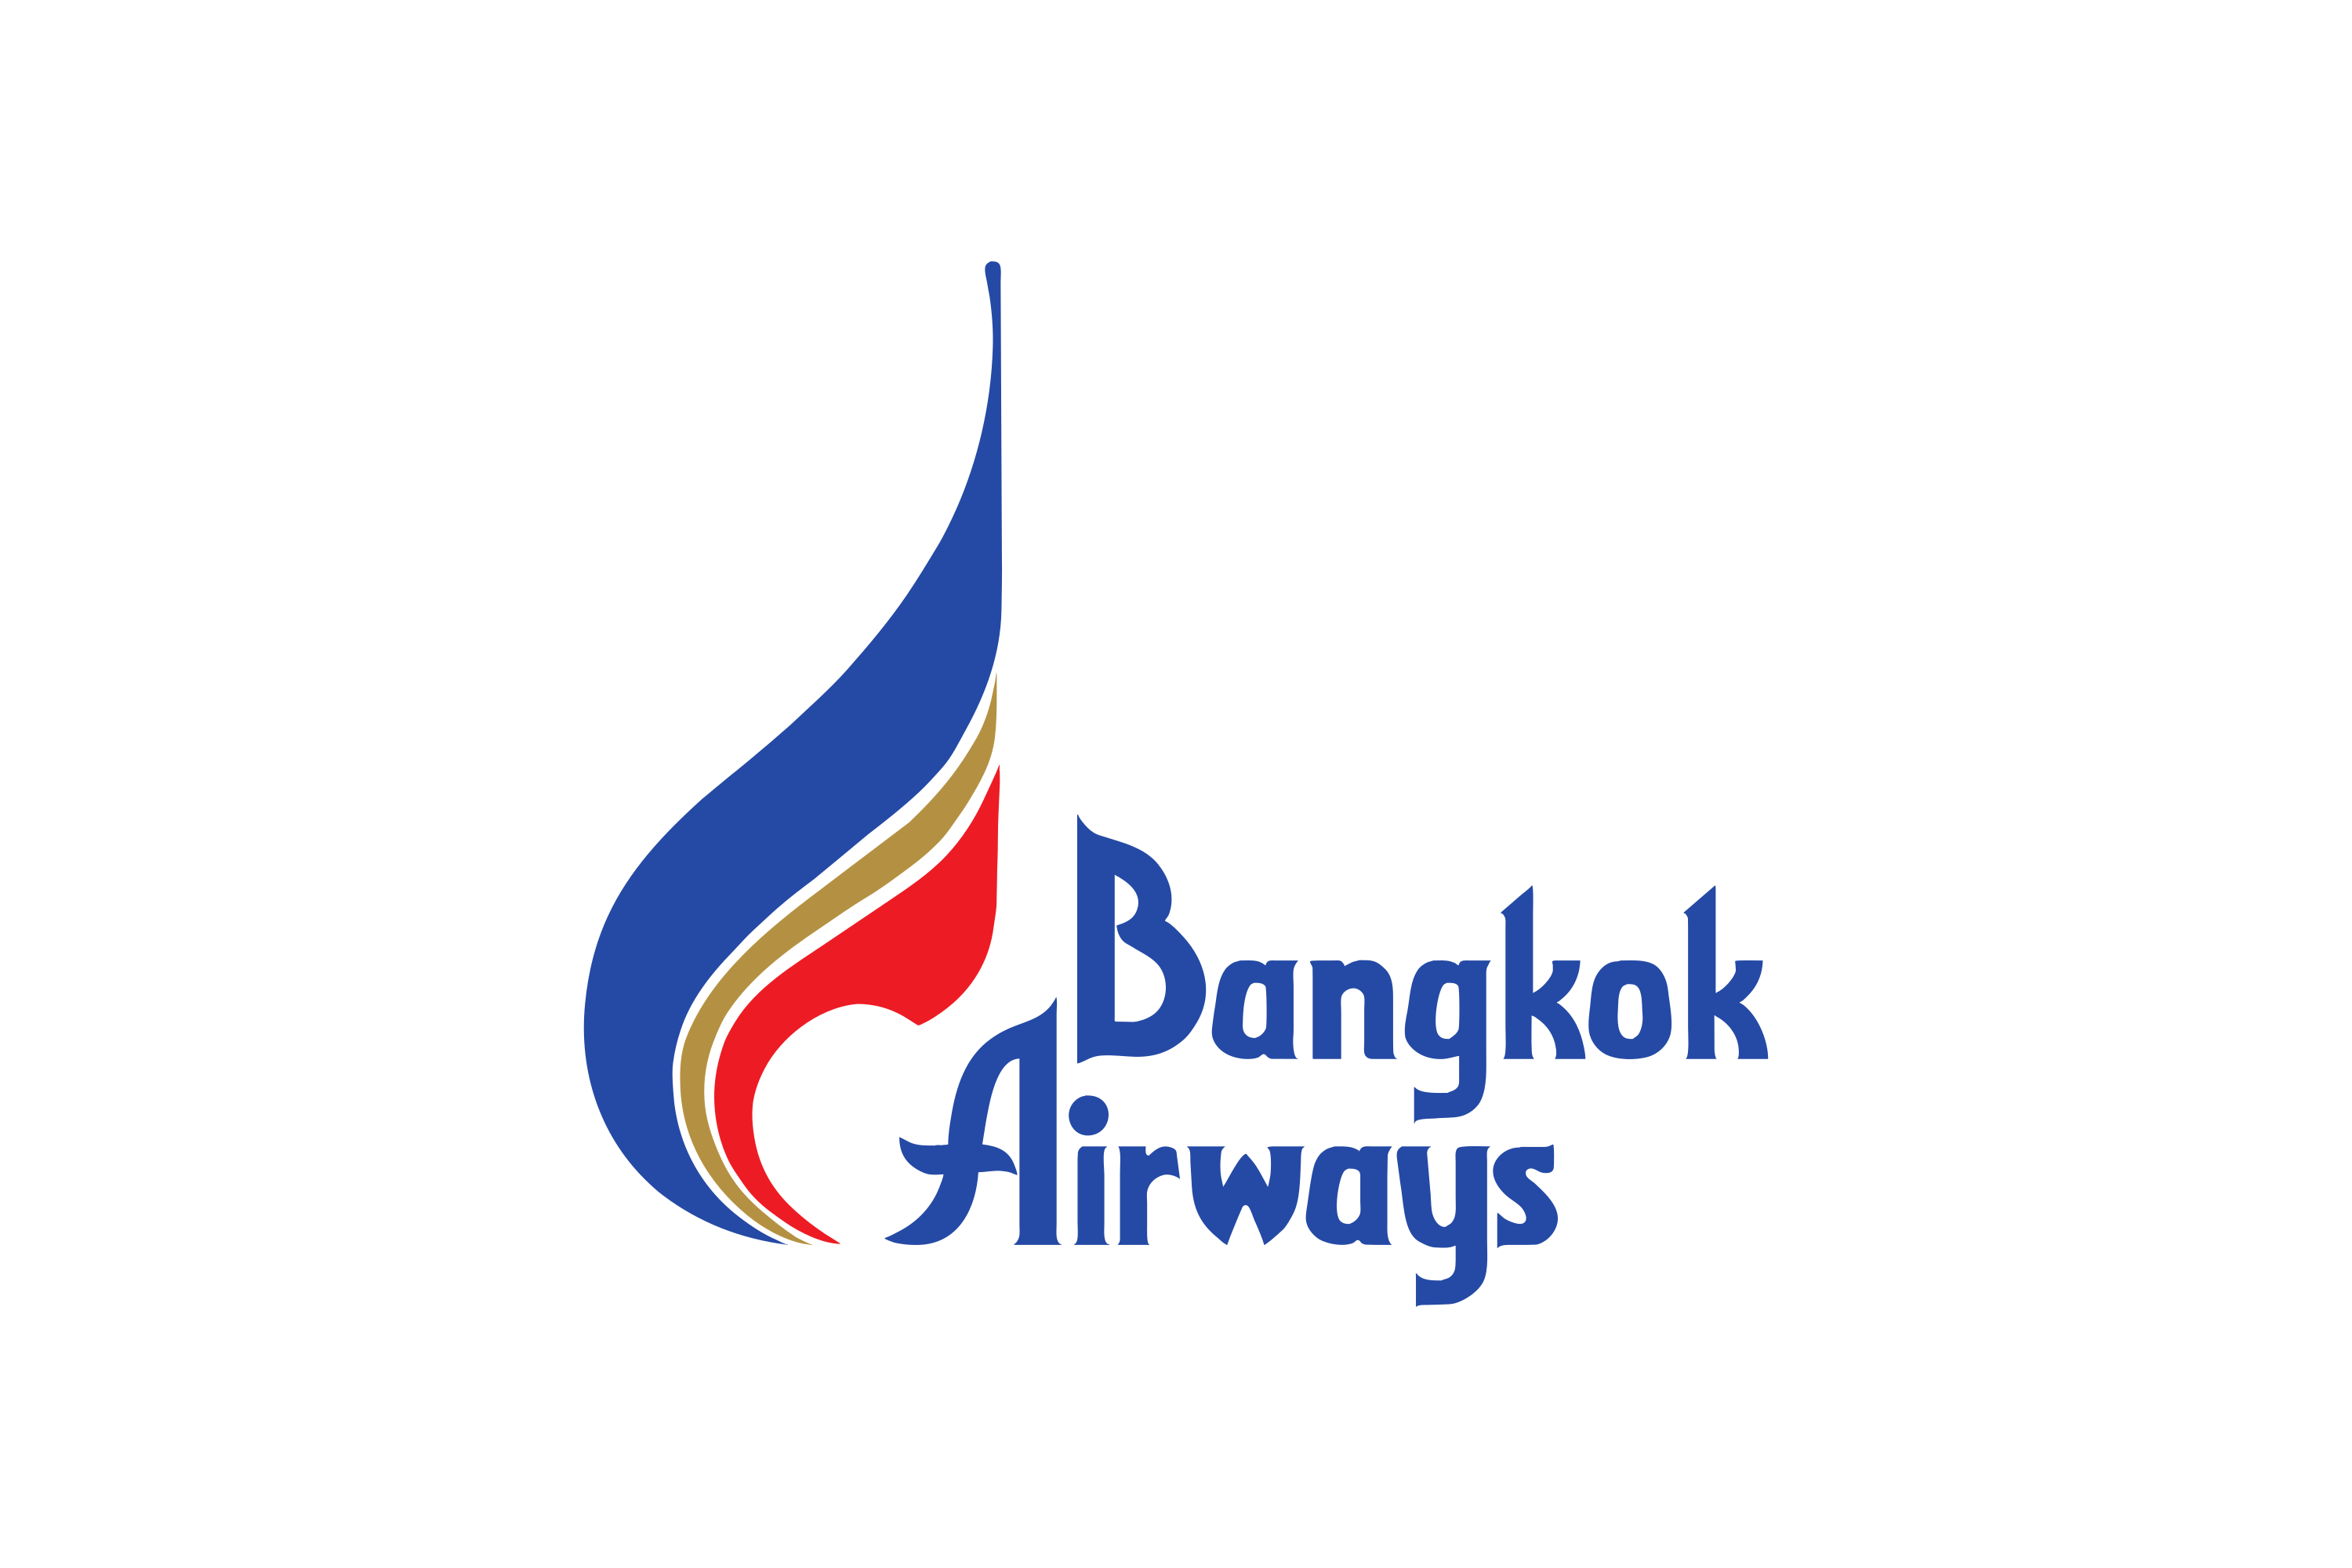 Bangkok Airways Dummy Ticket